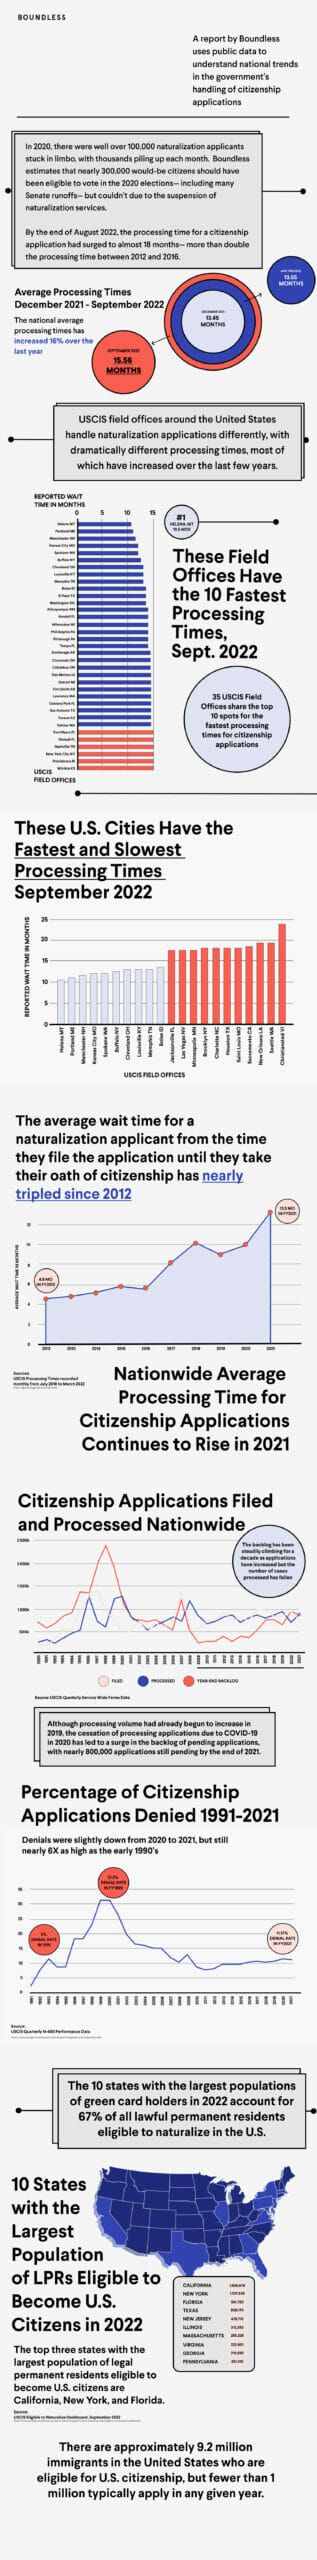 Citizenship wait times